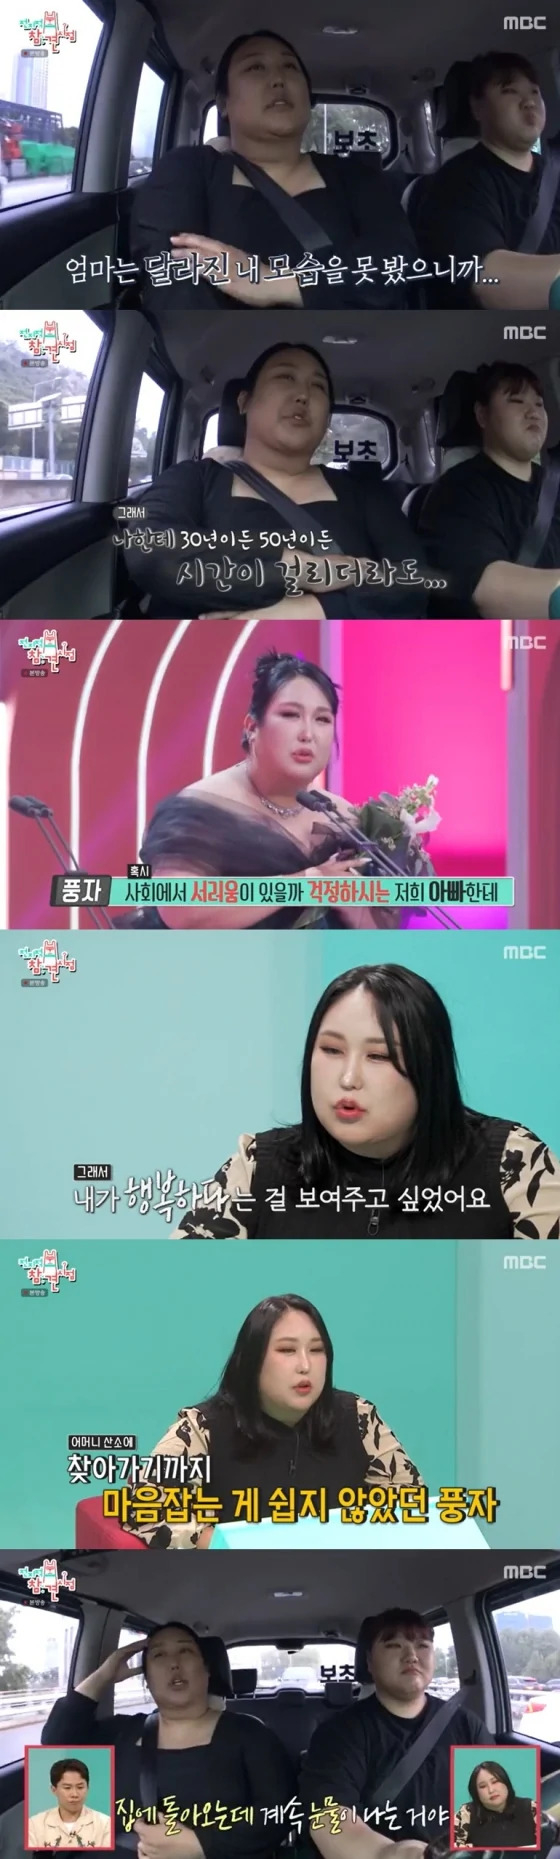 MBC 예능 프로그램 ‘전지적 참견 시점’